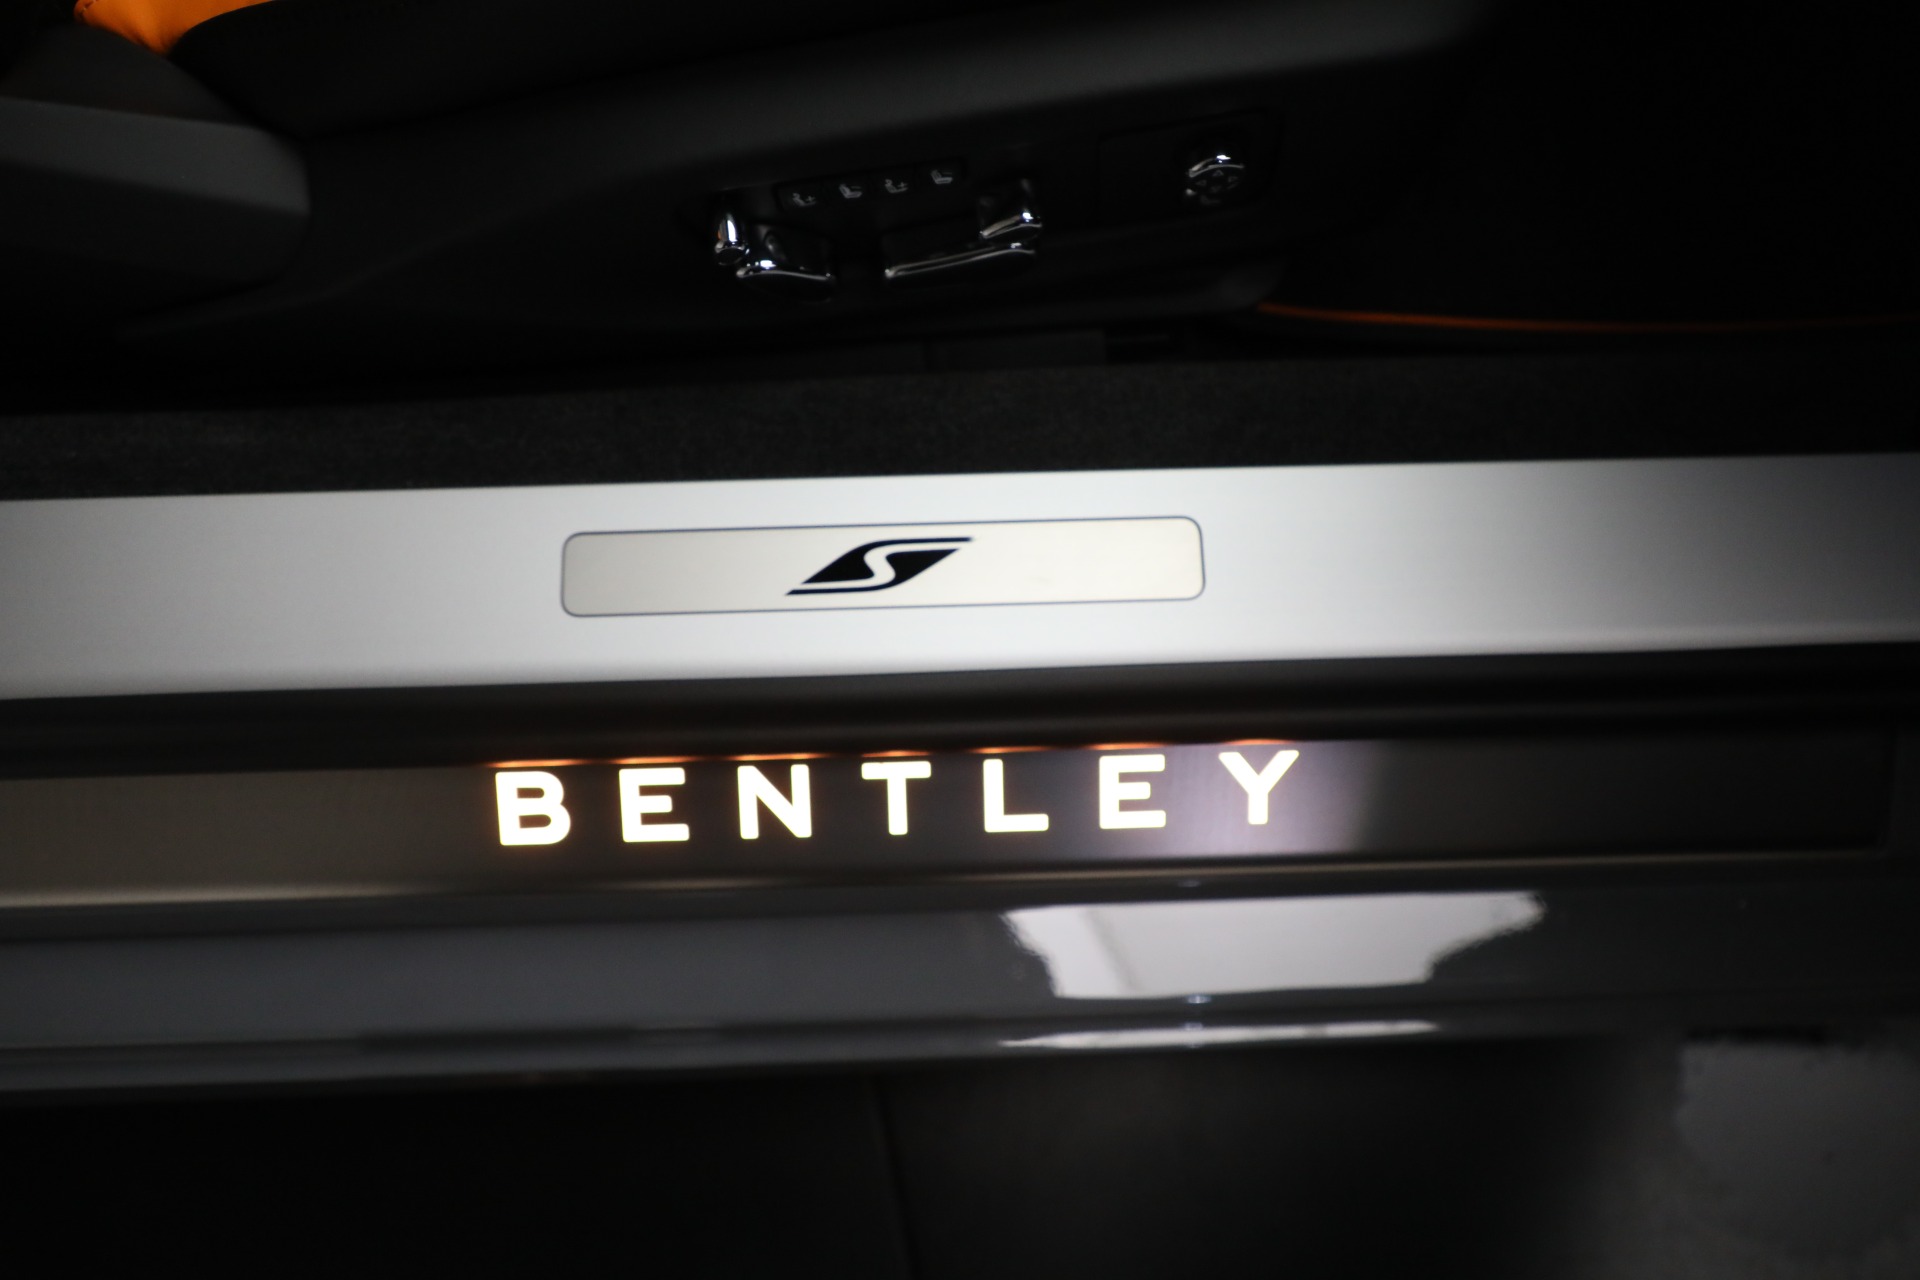 New 2024 Bentley Continental GTC S V8